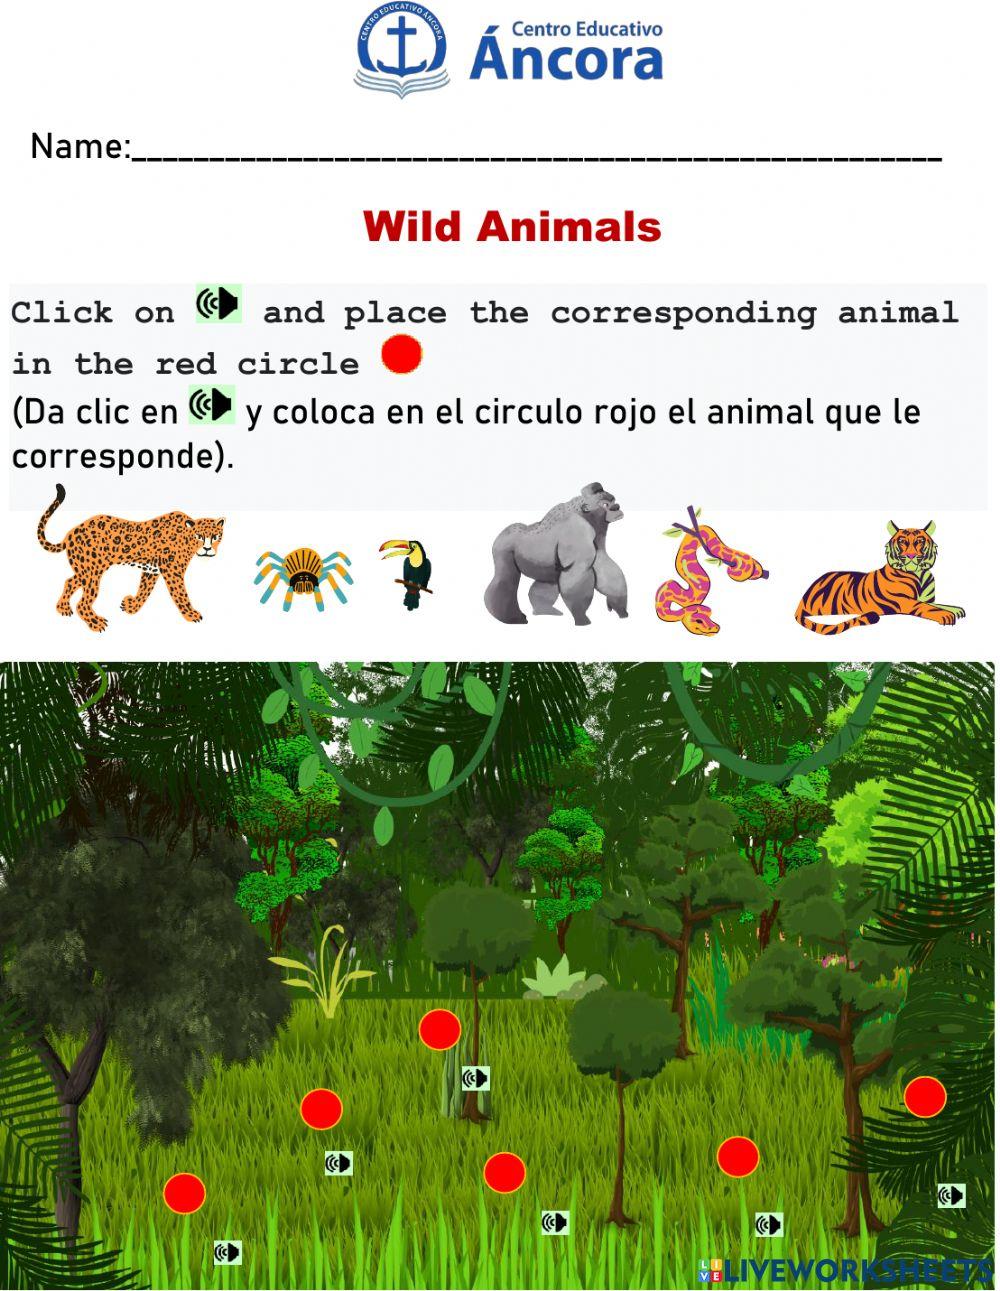 Wilds Animals.